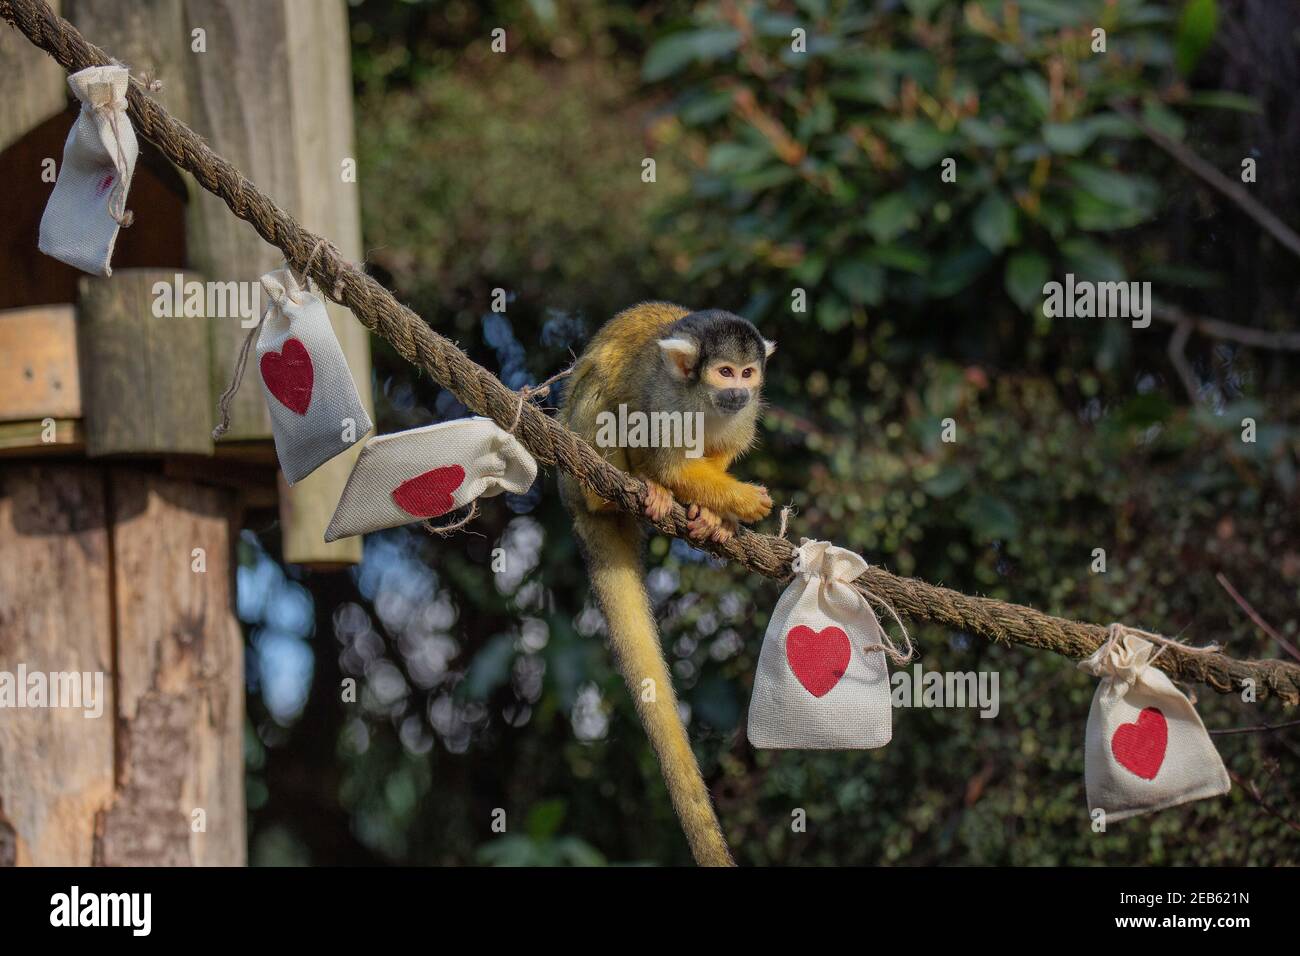 Ersparen Sie sich einen Gedanken für ZSL London Zoo 's bolivianischen schwarz gedeckelten Eichhörnchen Affen dieser Valentinstag . Der Zoo bleibt im Rahmen der landesweiten Sperrung für die Öffentlichkeit geschlossen, während Tierpfleger im Zoo bleiben, um sich um die Tiere zu kümmern.der Zoo bittet die Öffentlichkeit, etwas Liebe zu zeigen und zu spenden, um sich um die 18000 Tiere zu kümmern, da die Türen noch geschlossen sind Um die Regierung zu sperren, der Zoo fehlen auf lebenswichtige Einkommen. Engagierte Hüter sorgten dafür, dass es eine Tüte Leckereien für jedes Mitglied der schelmischen Gruppe gab, die zusammen in einem Spaziergang unter freiem Himmel durch den historischen Zoo leben. Stockfoto